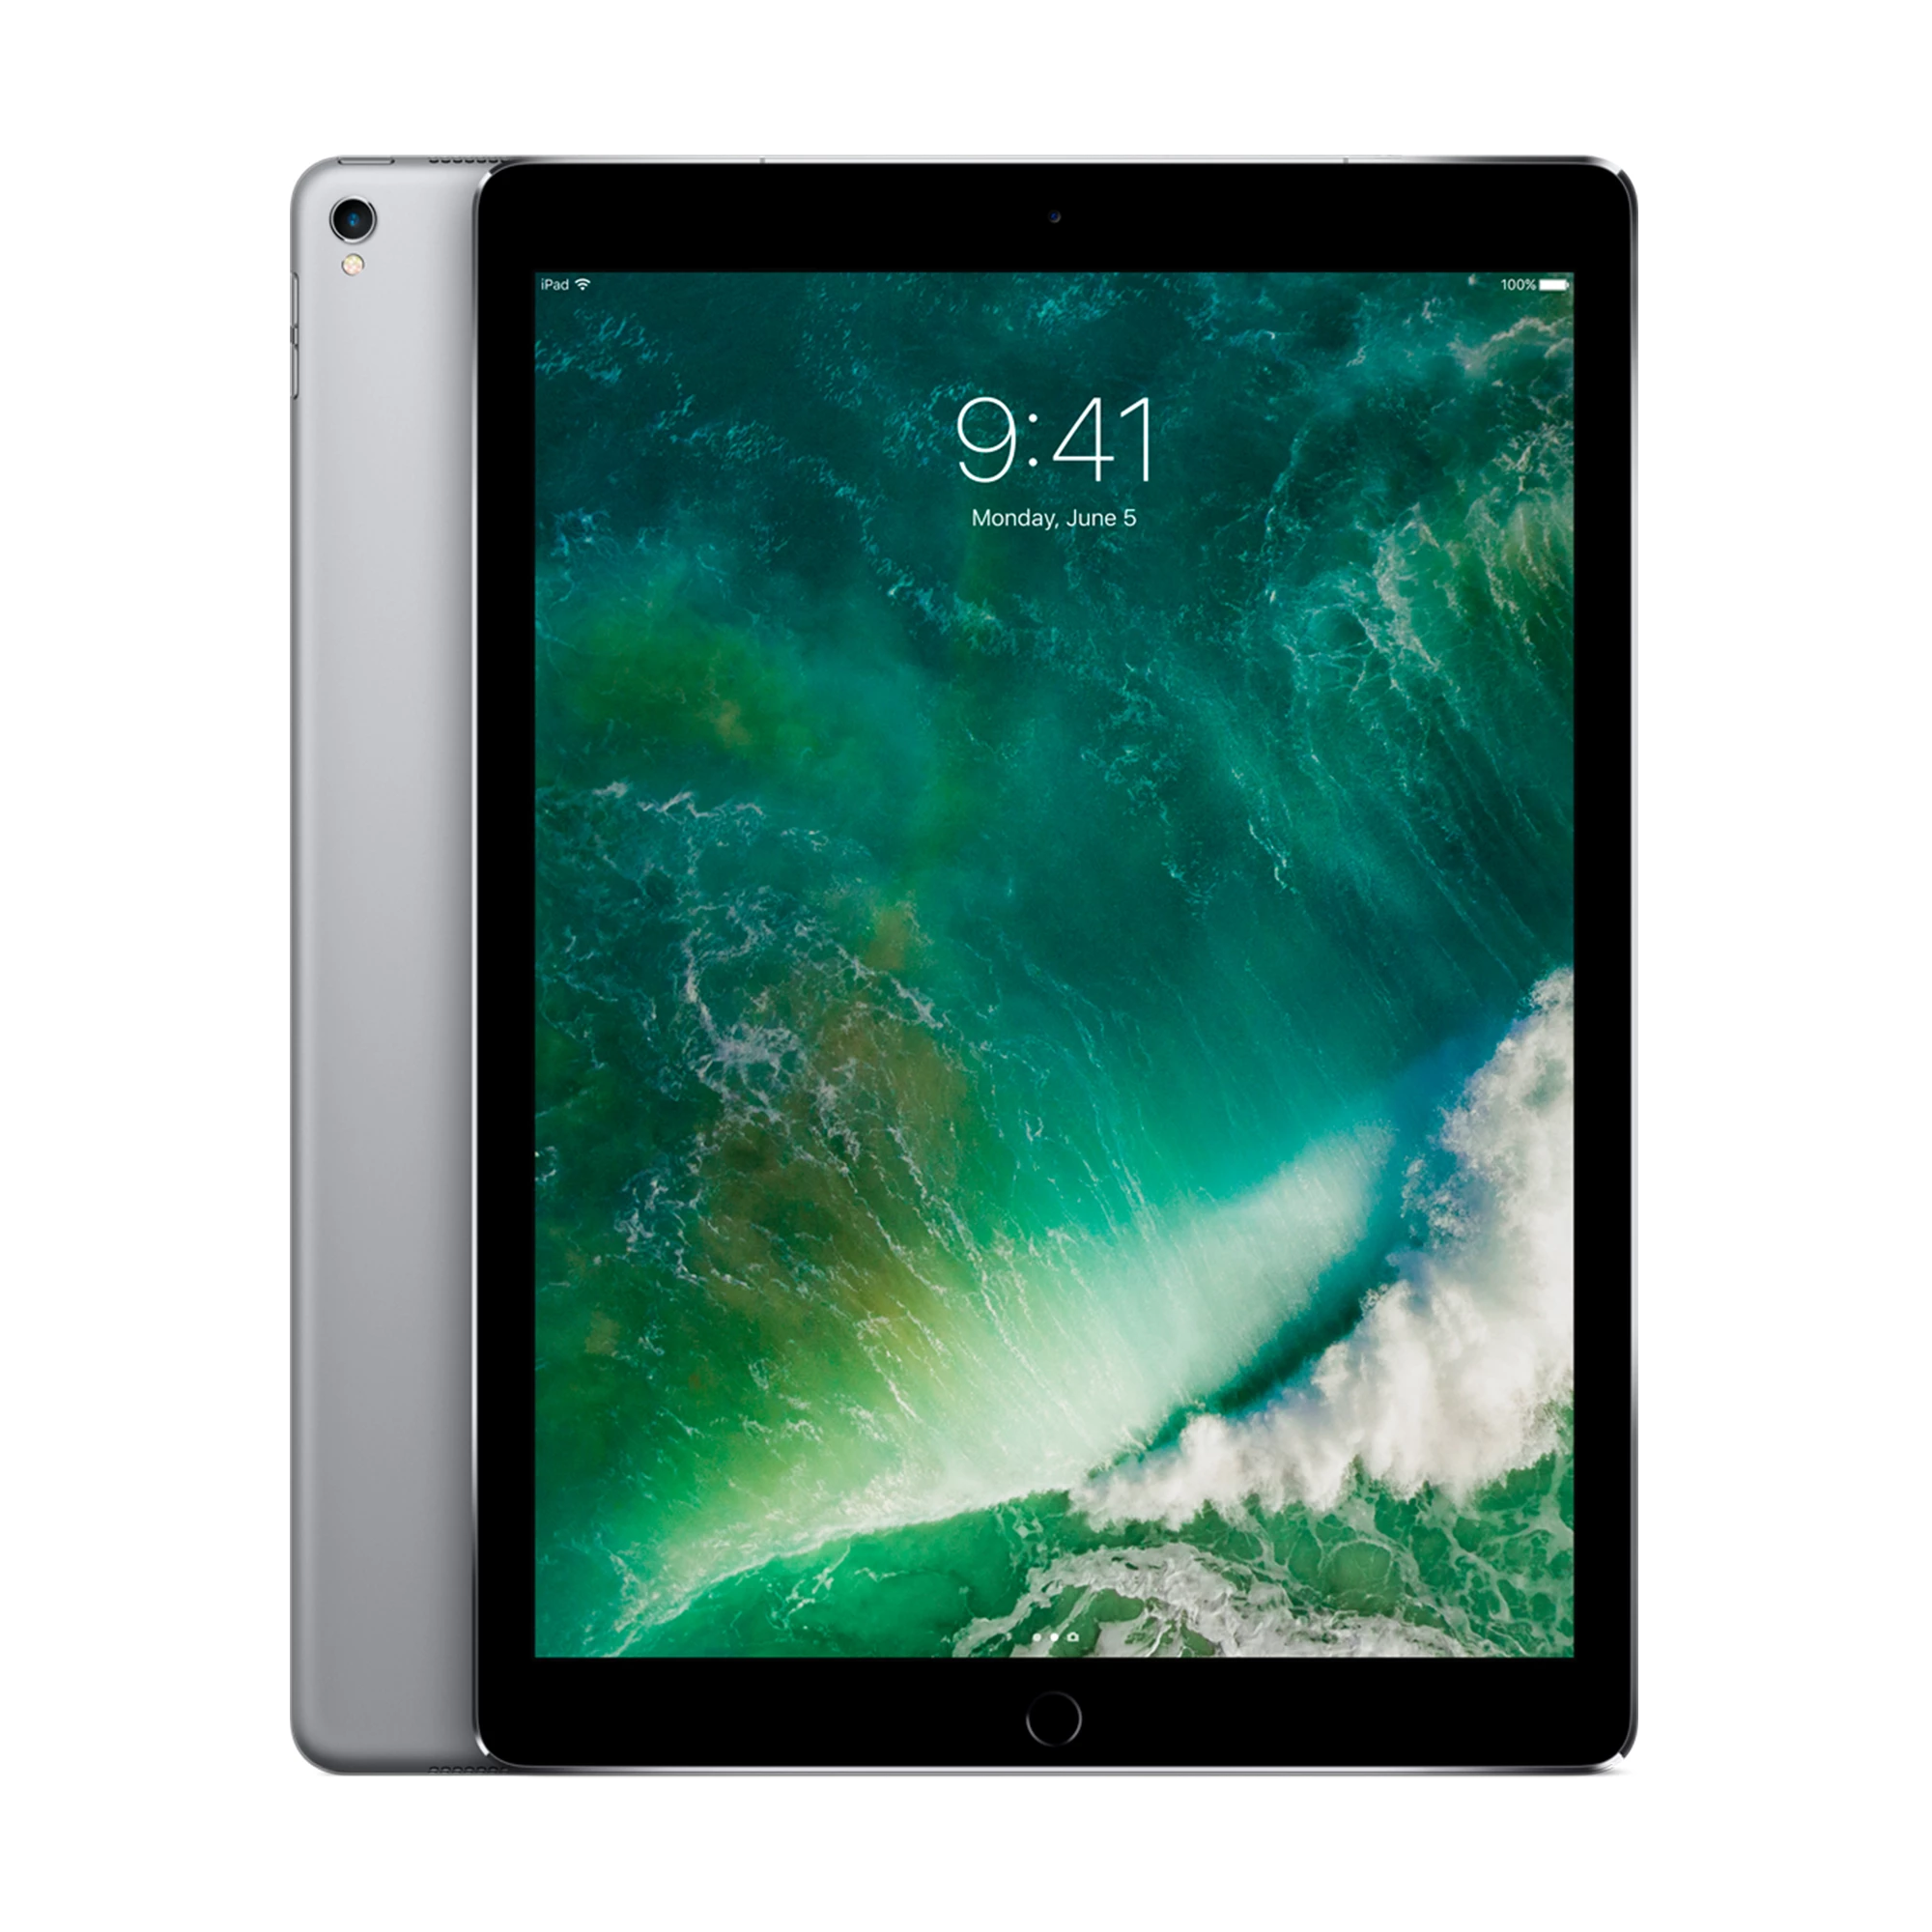 iPad Pro 12.9" (2017) Wi-Fi + Cellular 256GB Space Gray (MPA42)